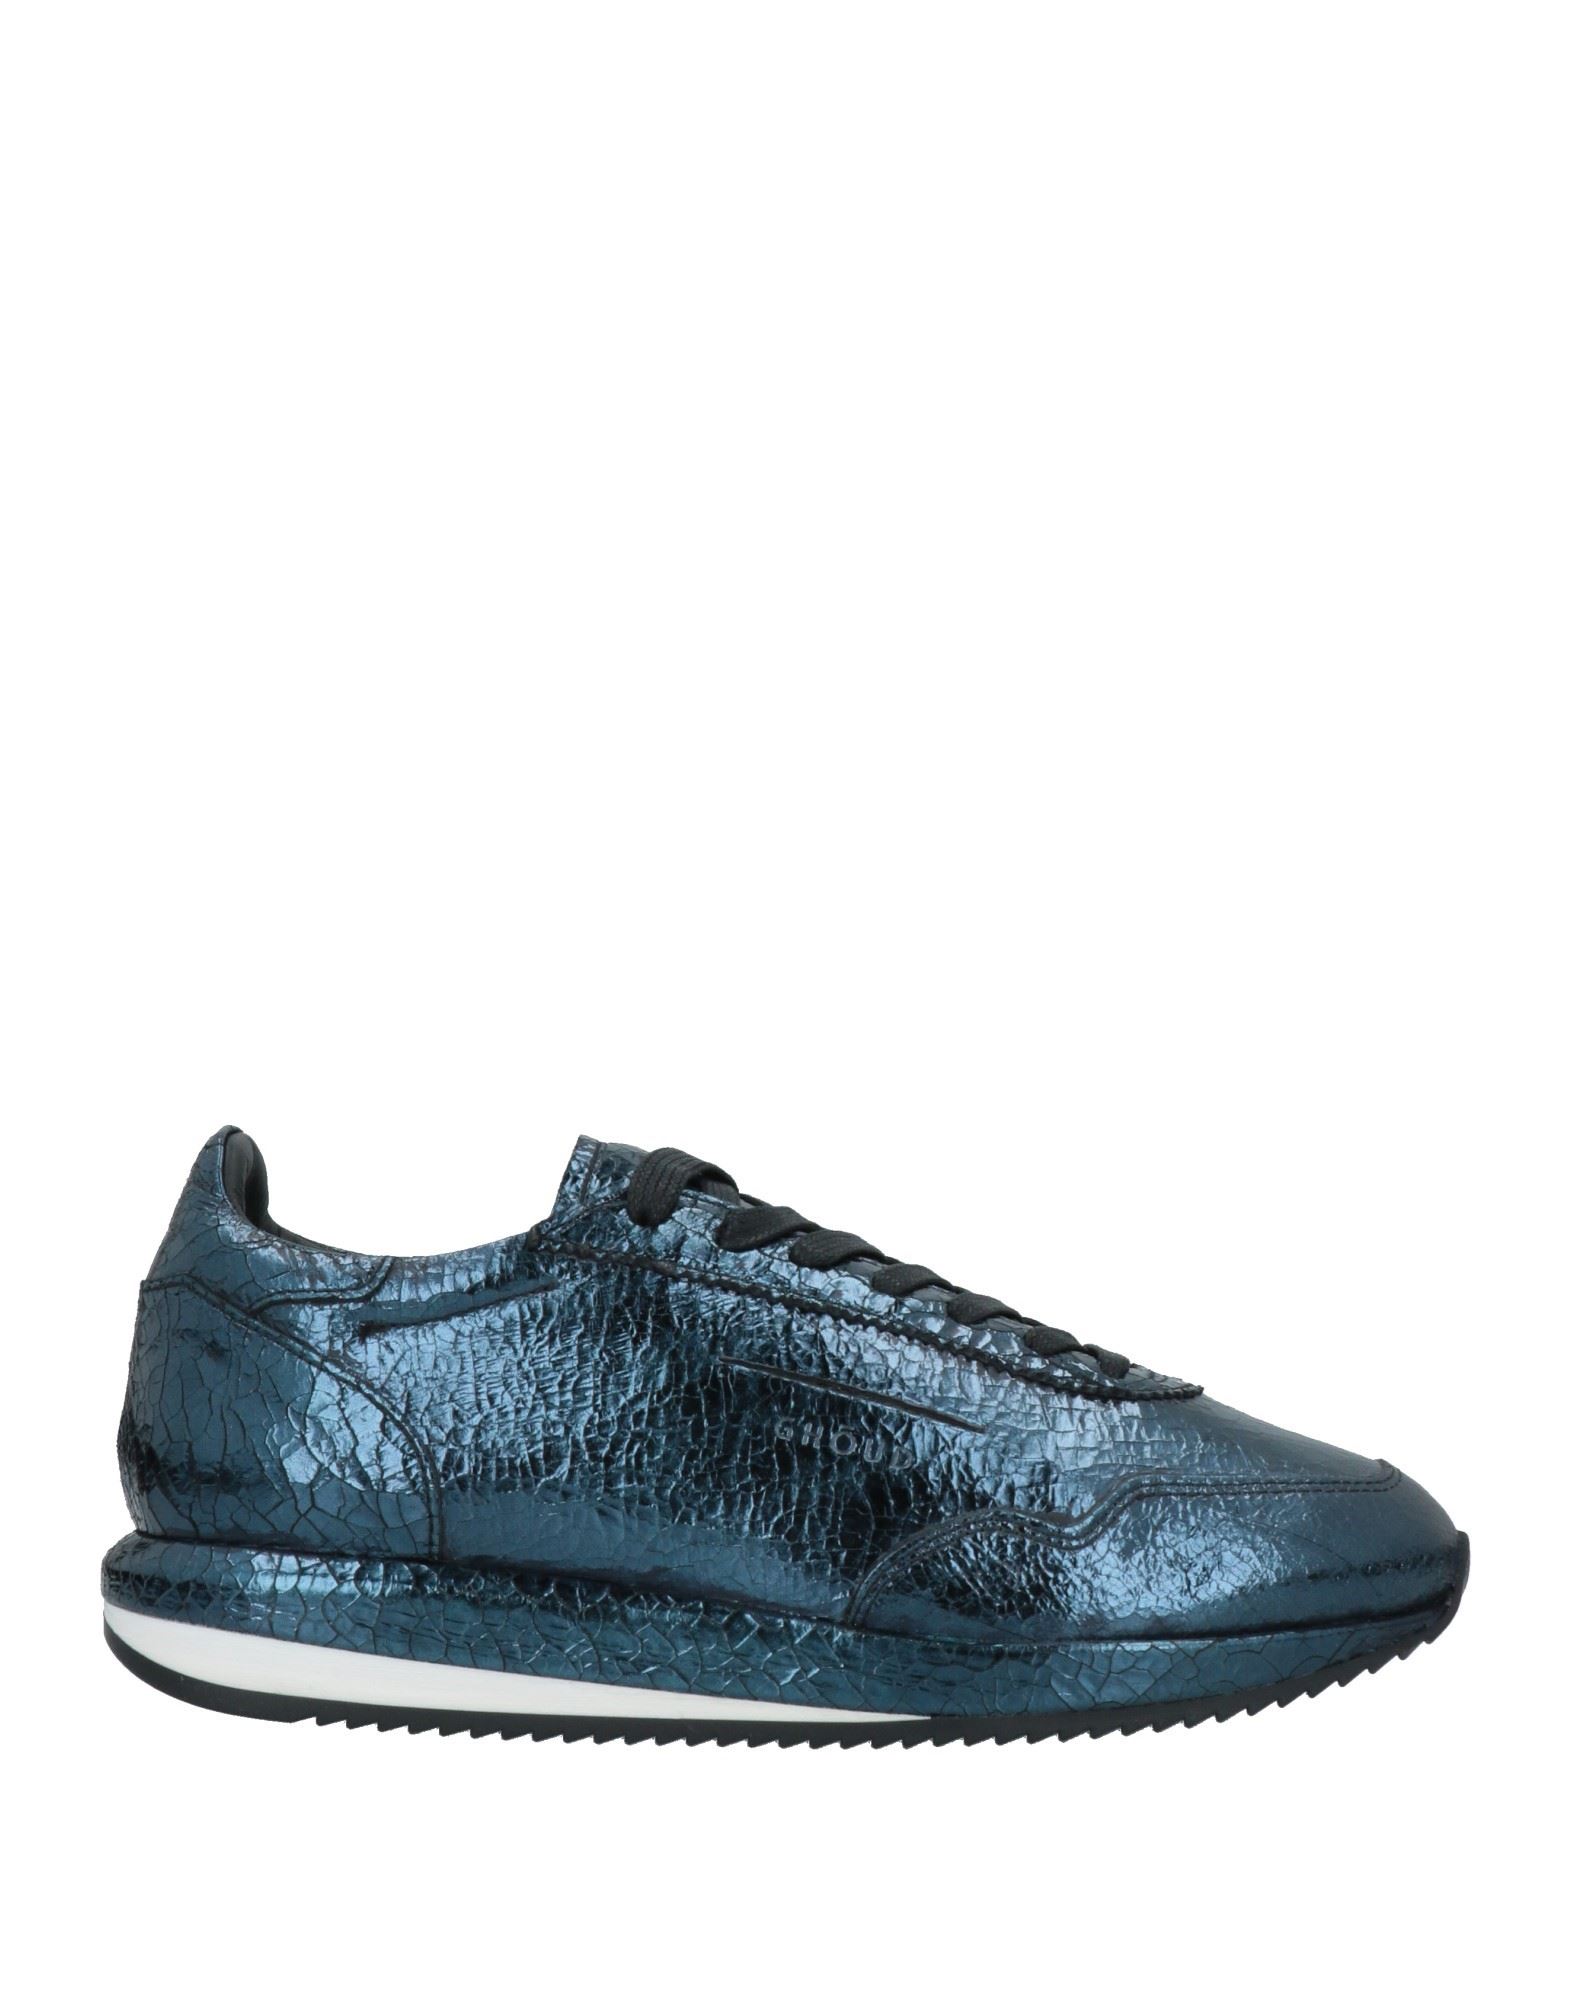 Ghoud Venice Sneakers In Blue